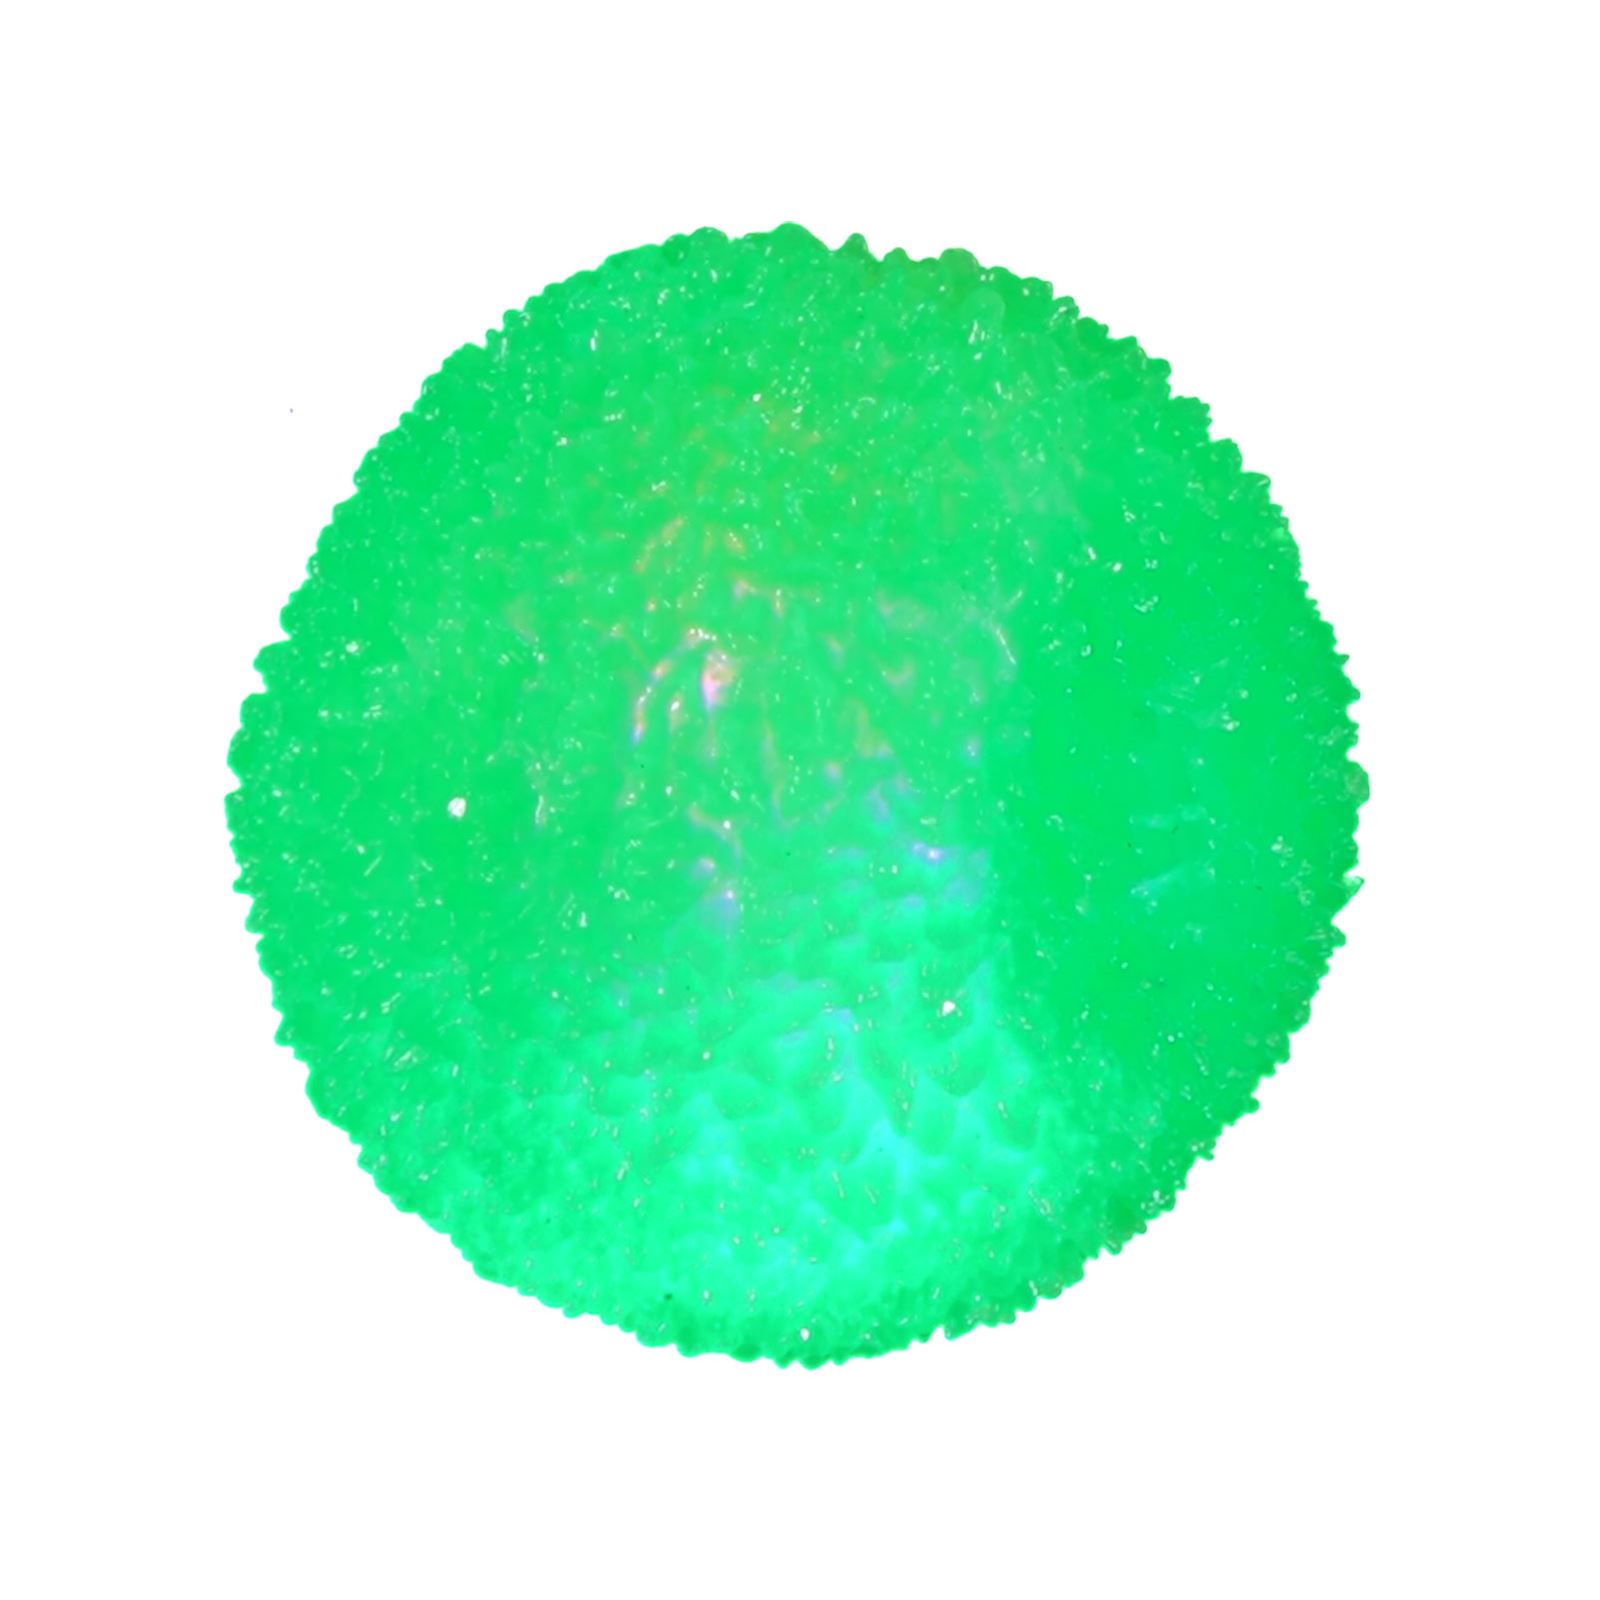 Prestij Oyuncak Işıklı Elastik Top Yeşil